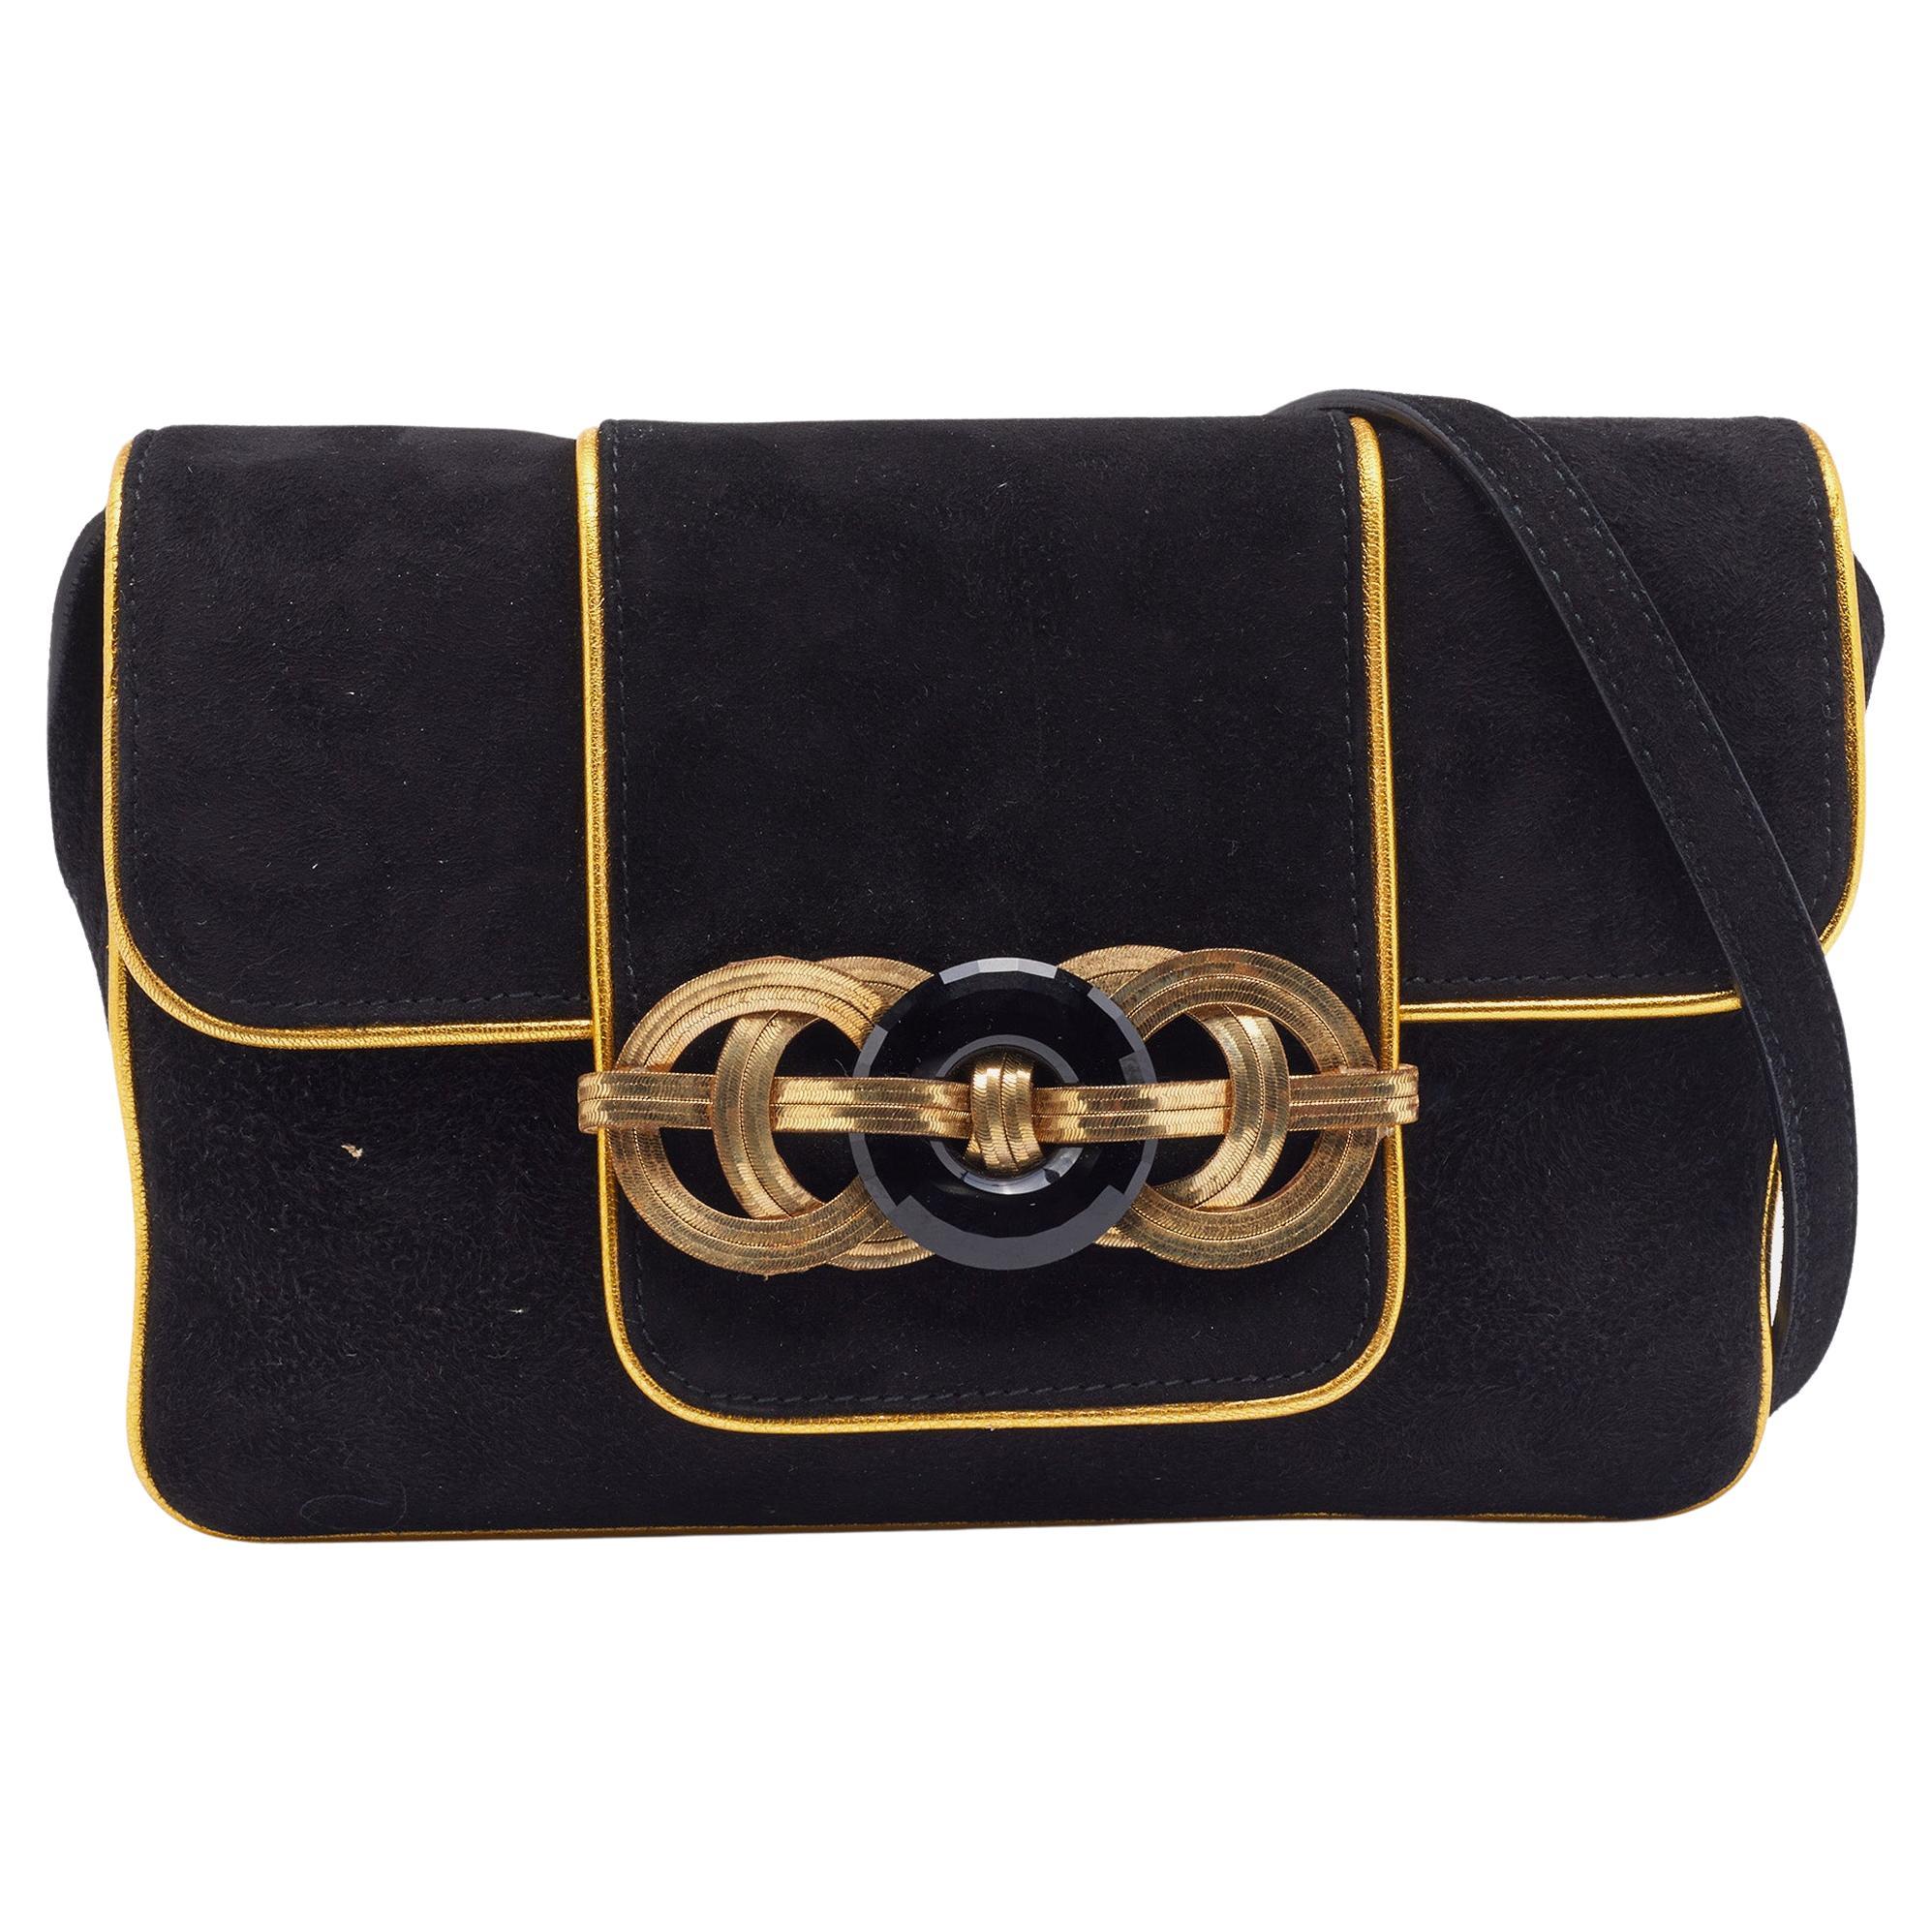 Ralph Lauren Black/Gold Suede And Leather Embellished Flap Shoulder Bag